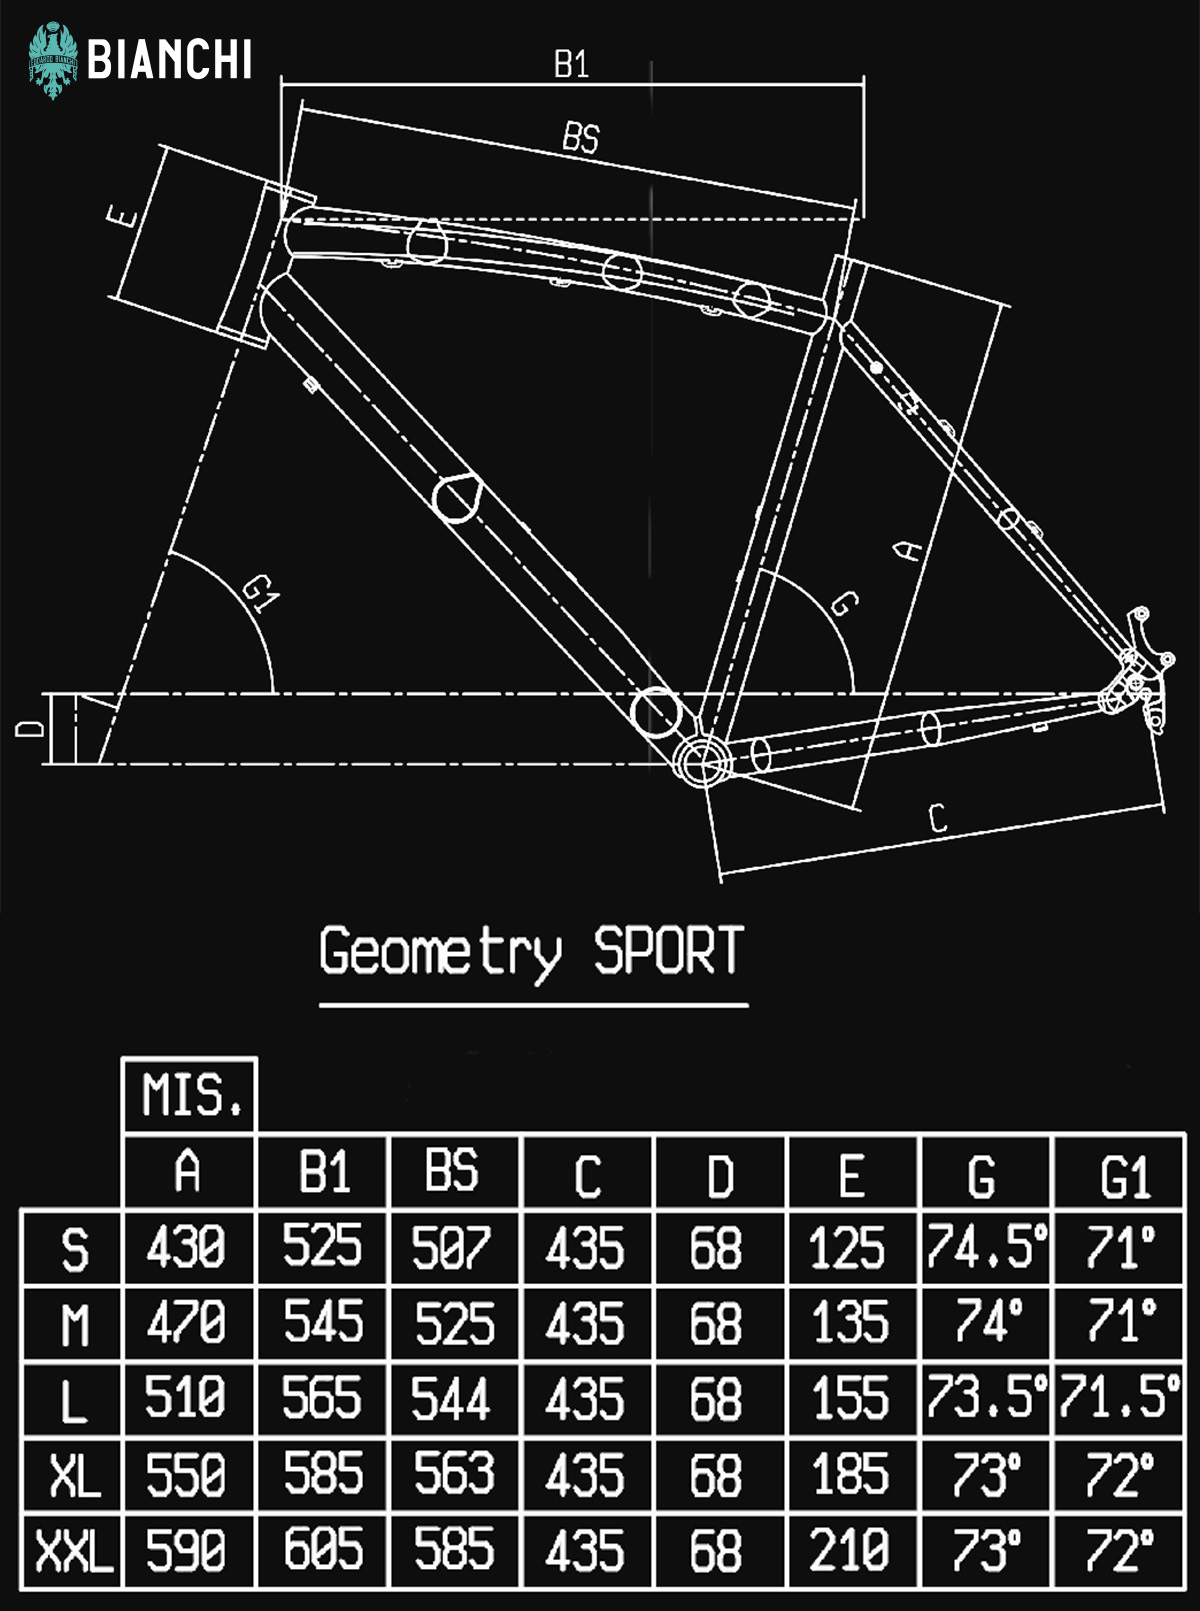 La tabella con le geometrie della nuova bici urbana Bianchi C Sport 2022